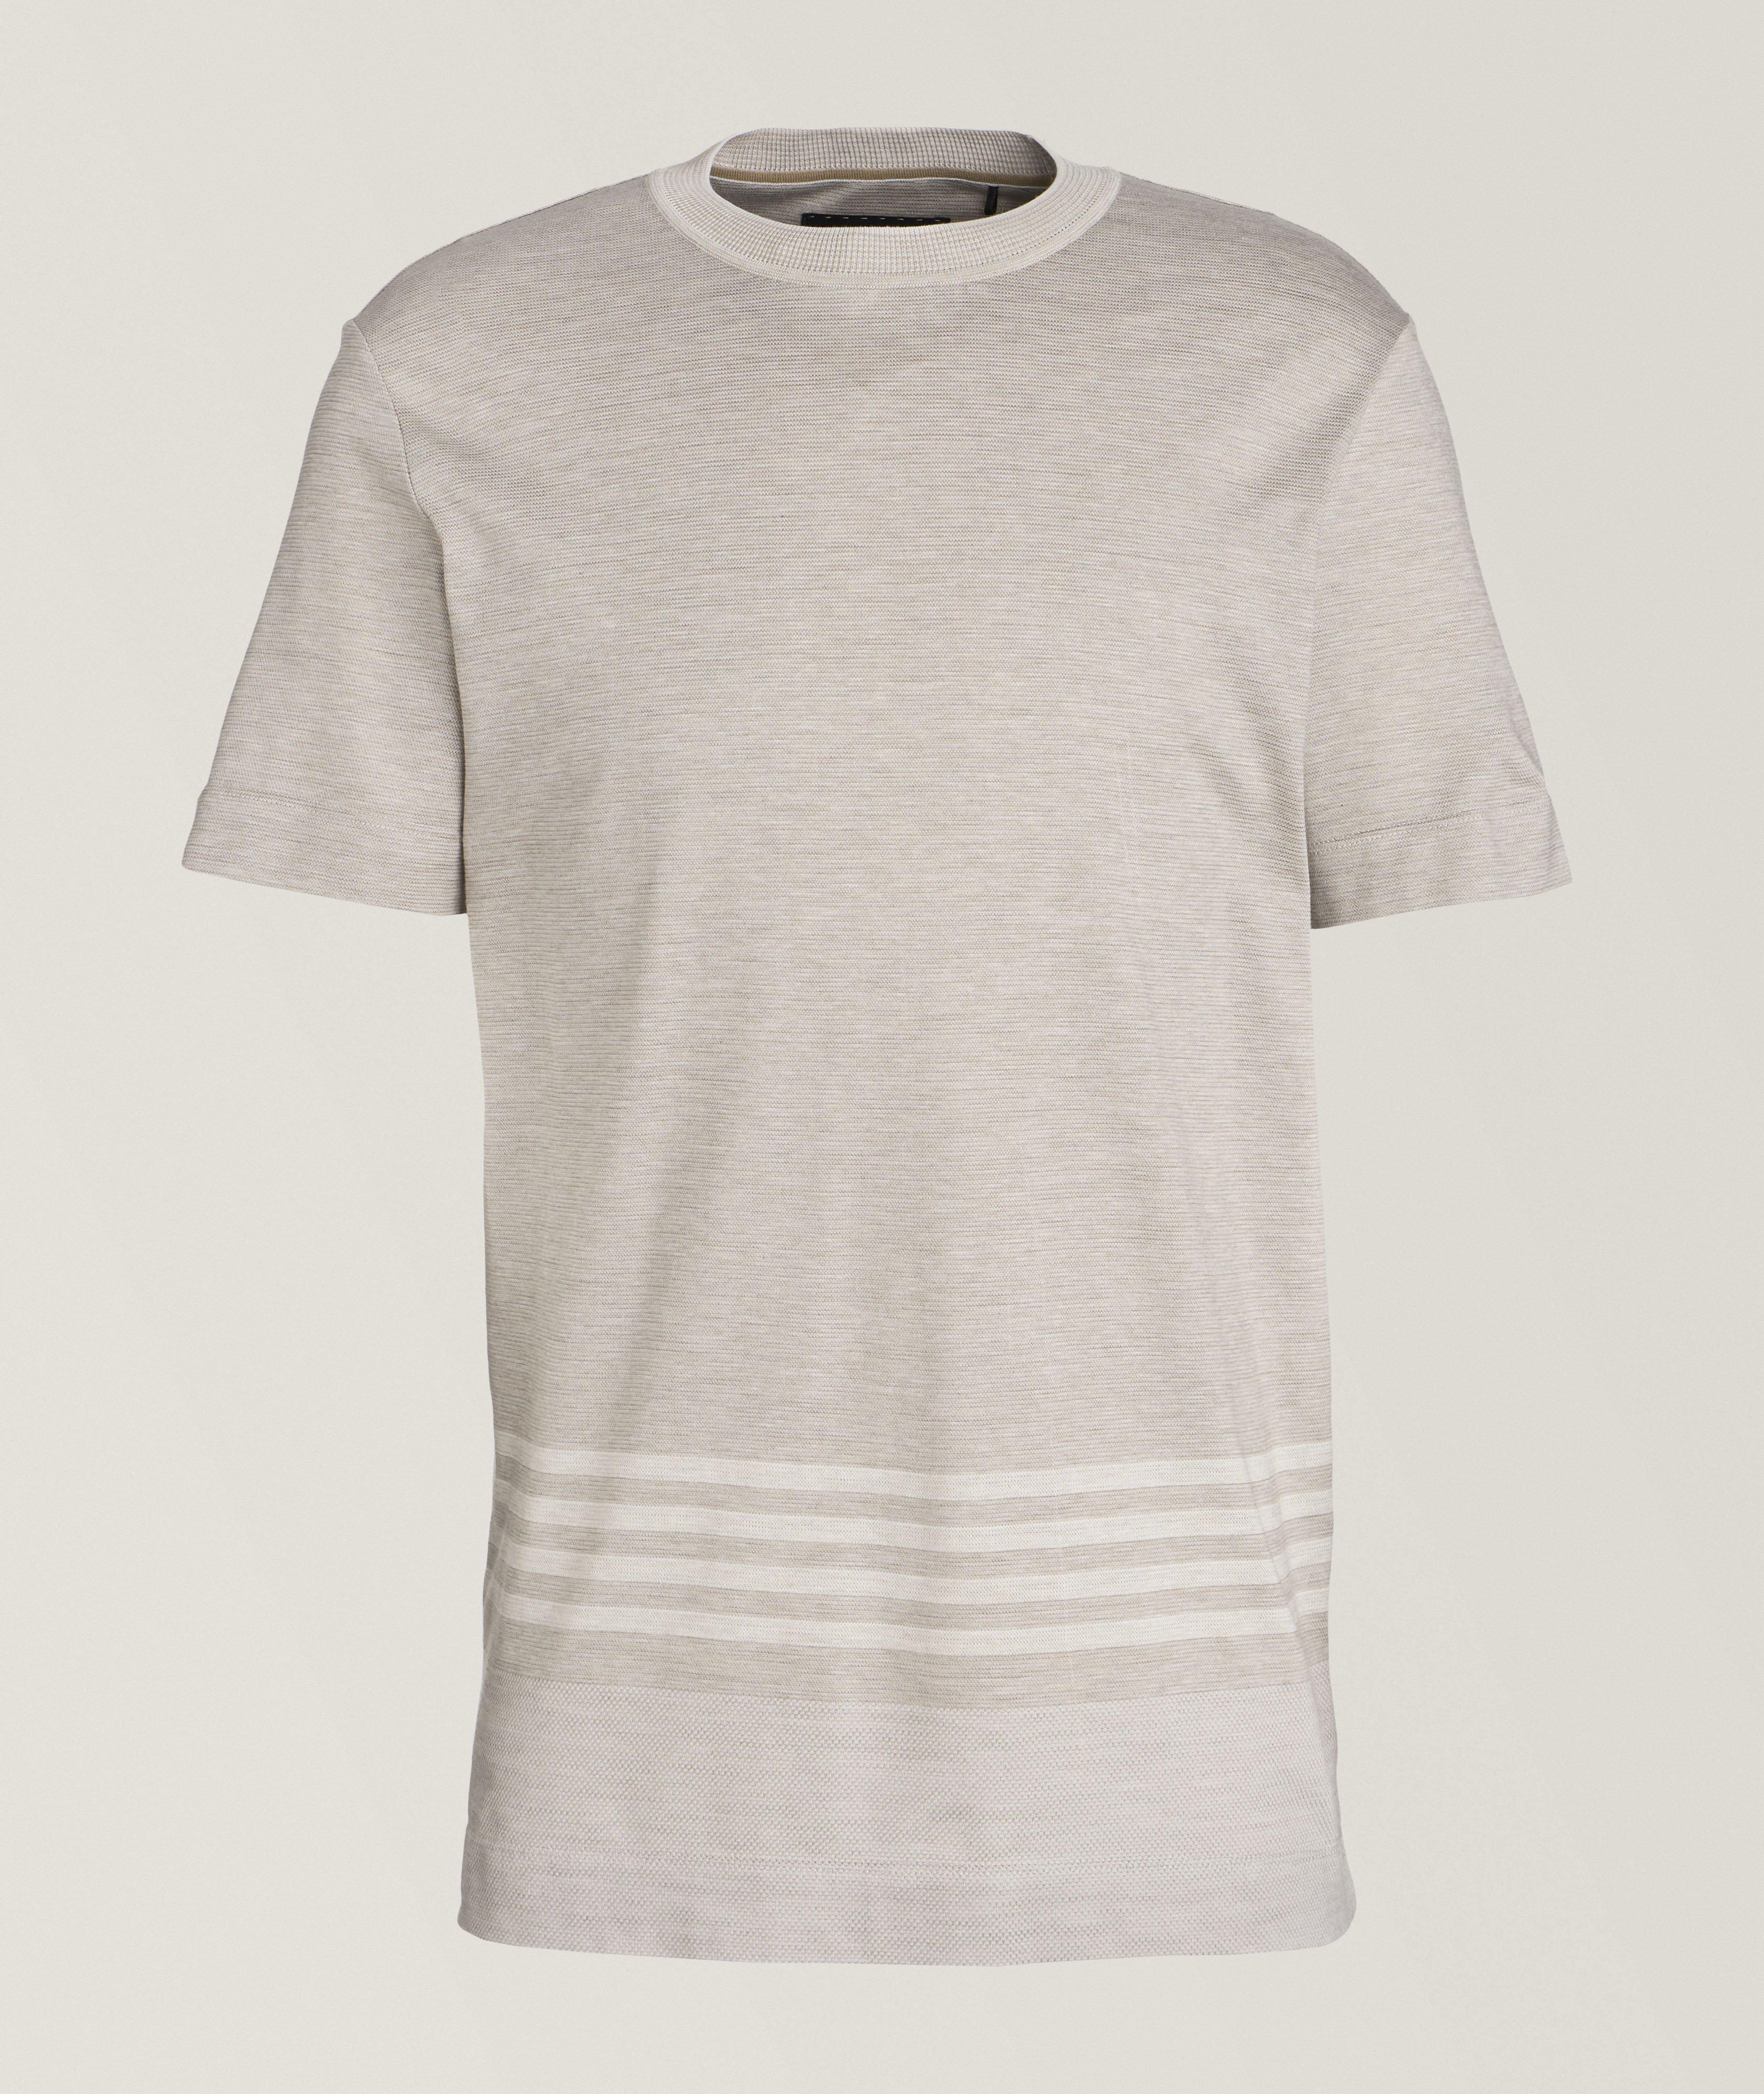 Cotton-Silk Knit T-Shirt